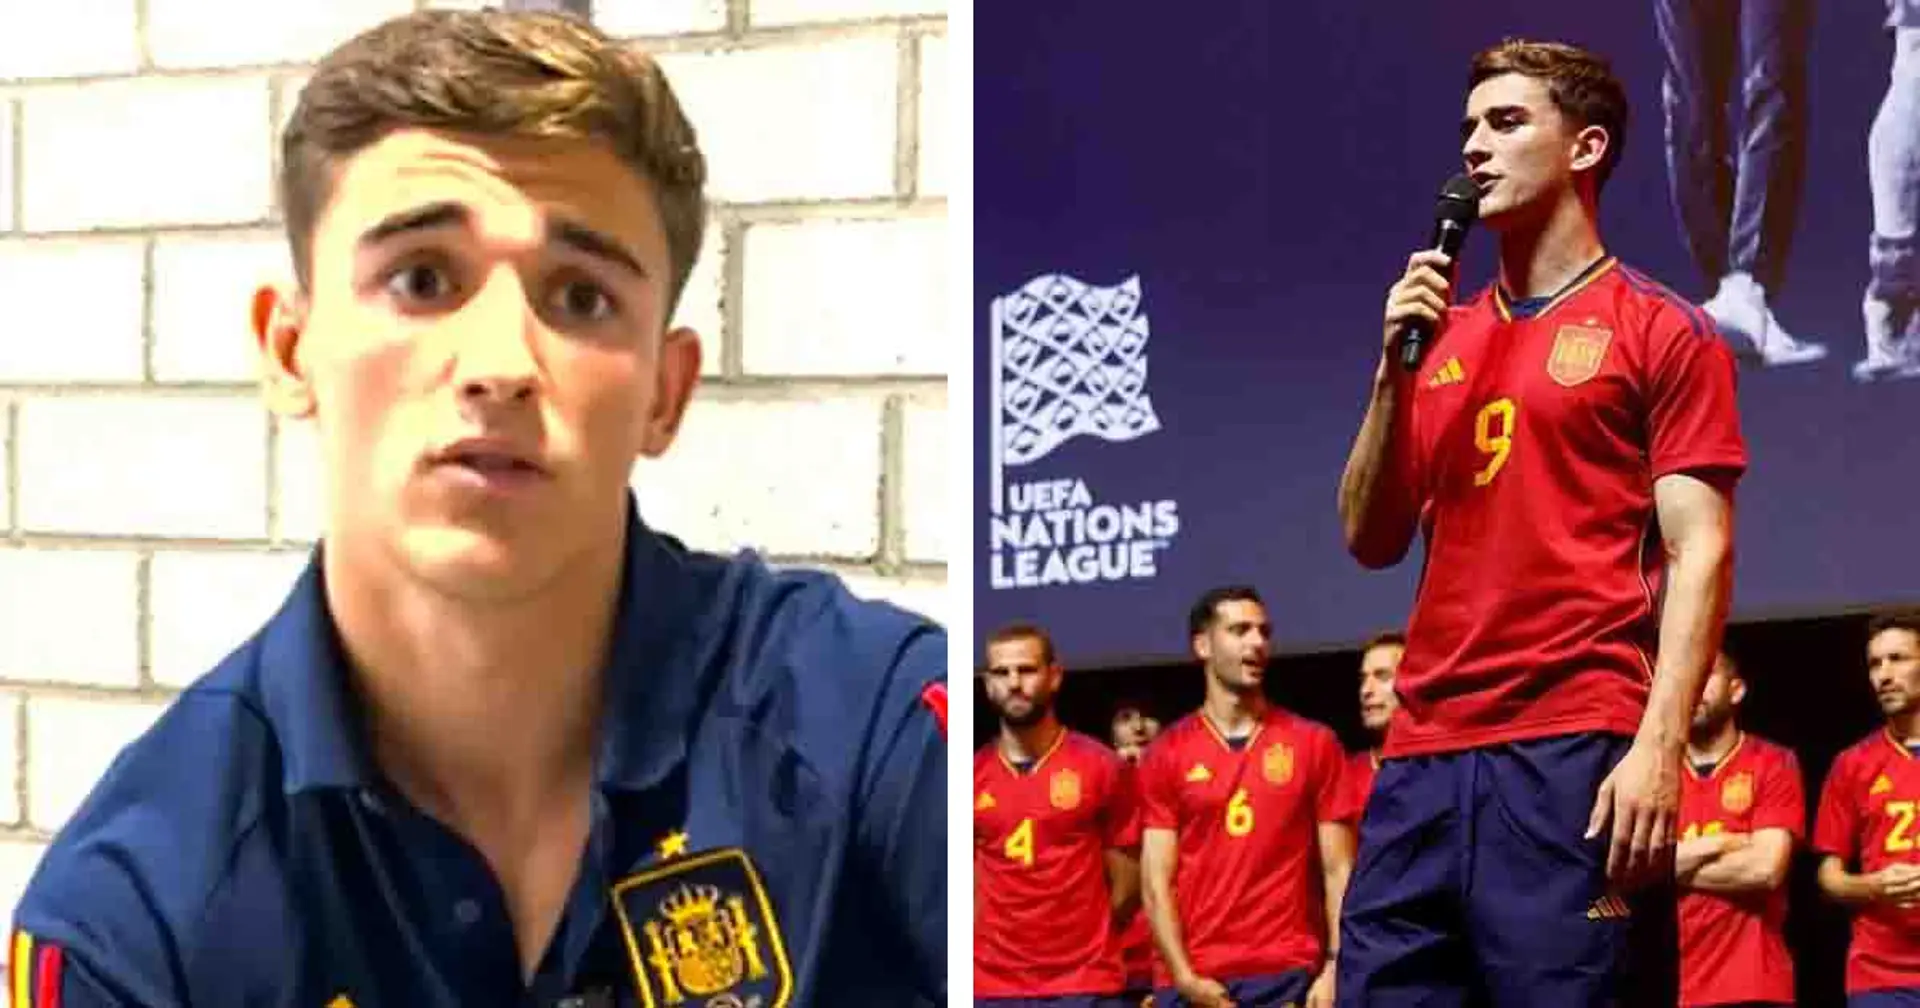 Gavi rompt le silence après avoir reçu les chants "Pu*a Barca" lors de la célébration de la Ligue des Nations